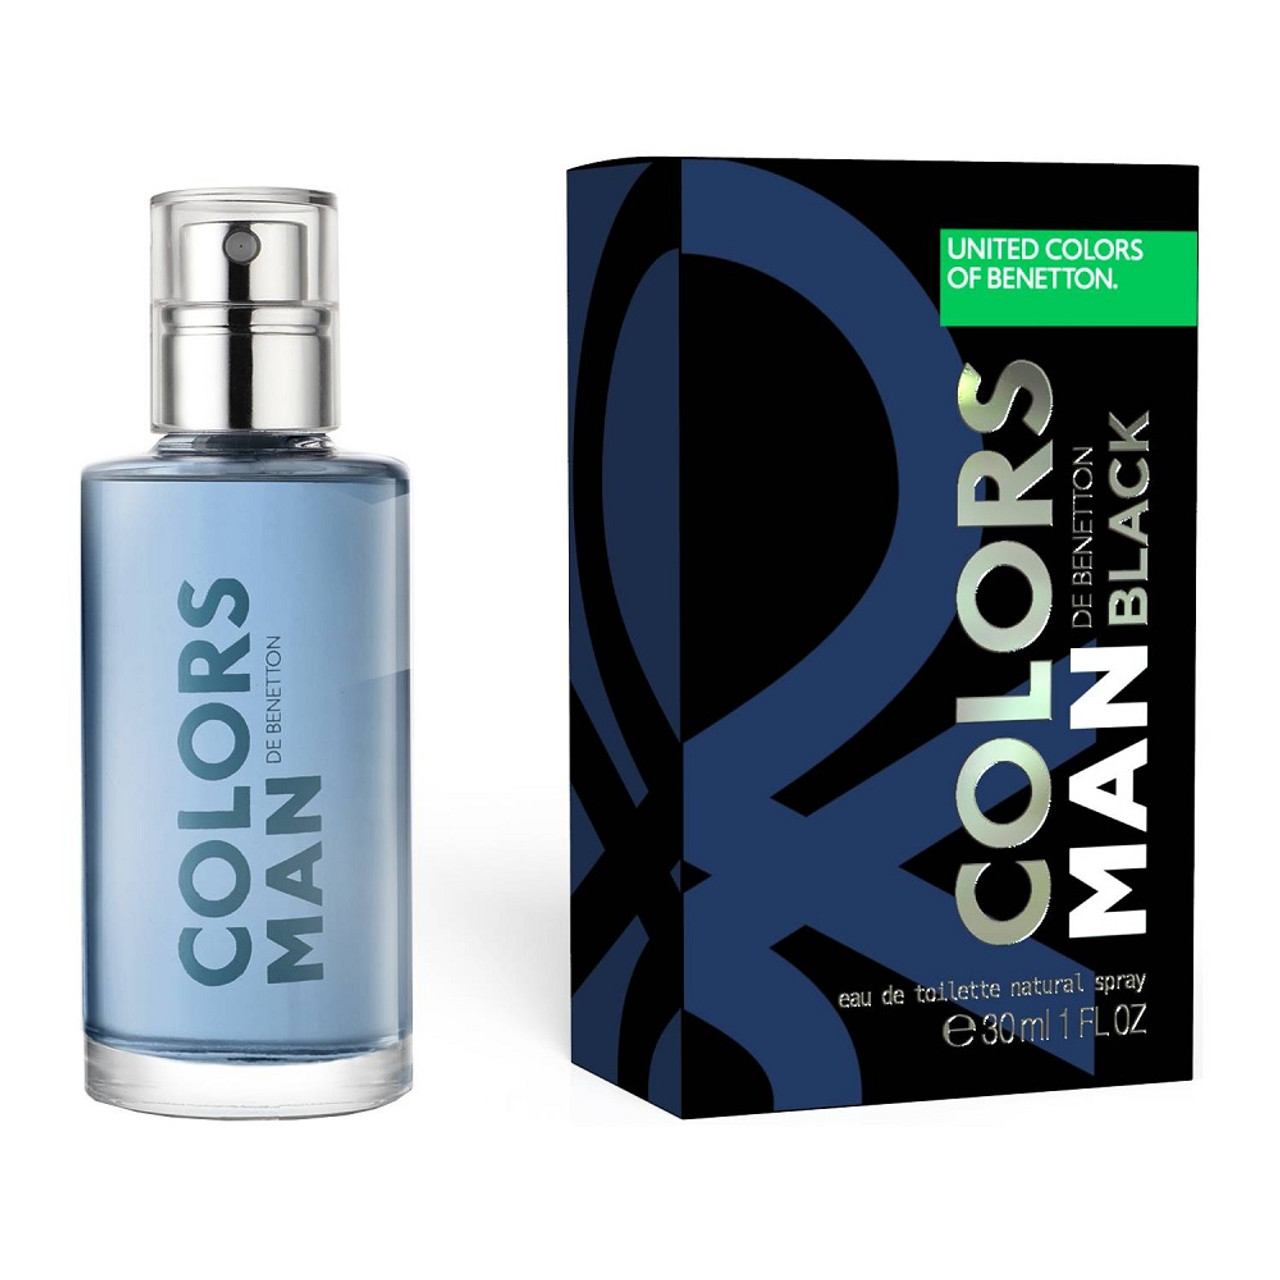 United Colors of Benetton Eau de Toilette Spray, Perfume for Men, 1 oz